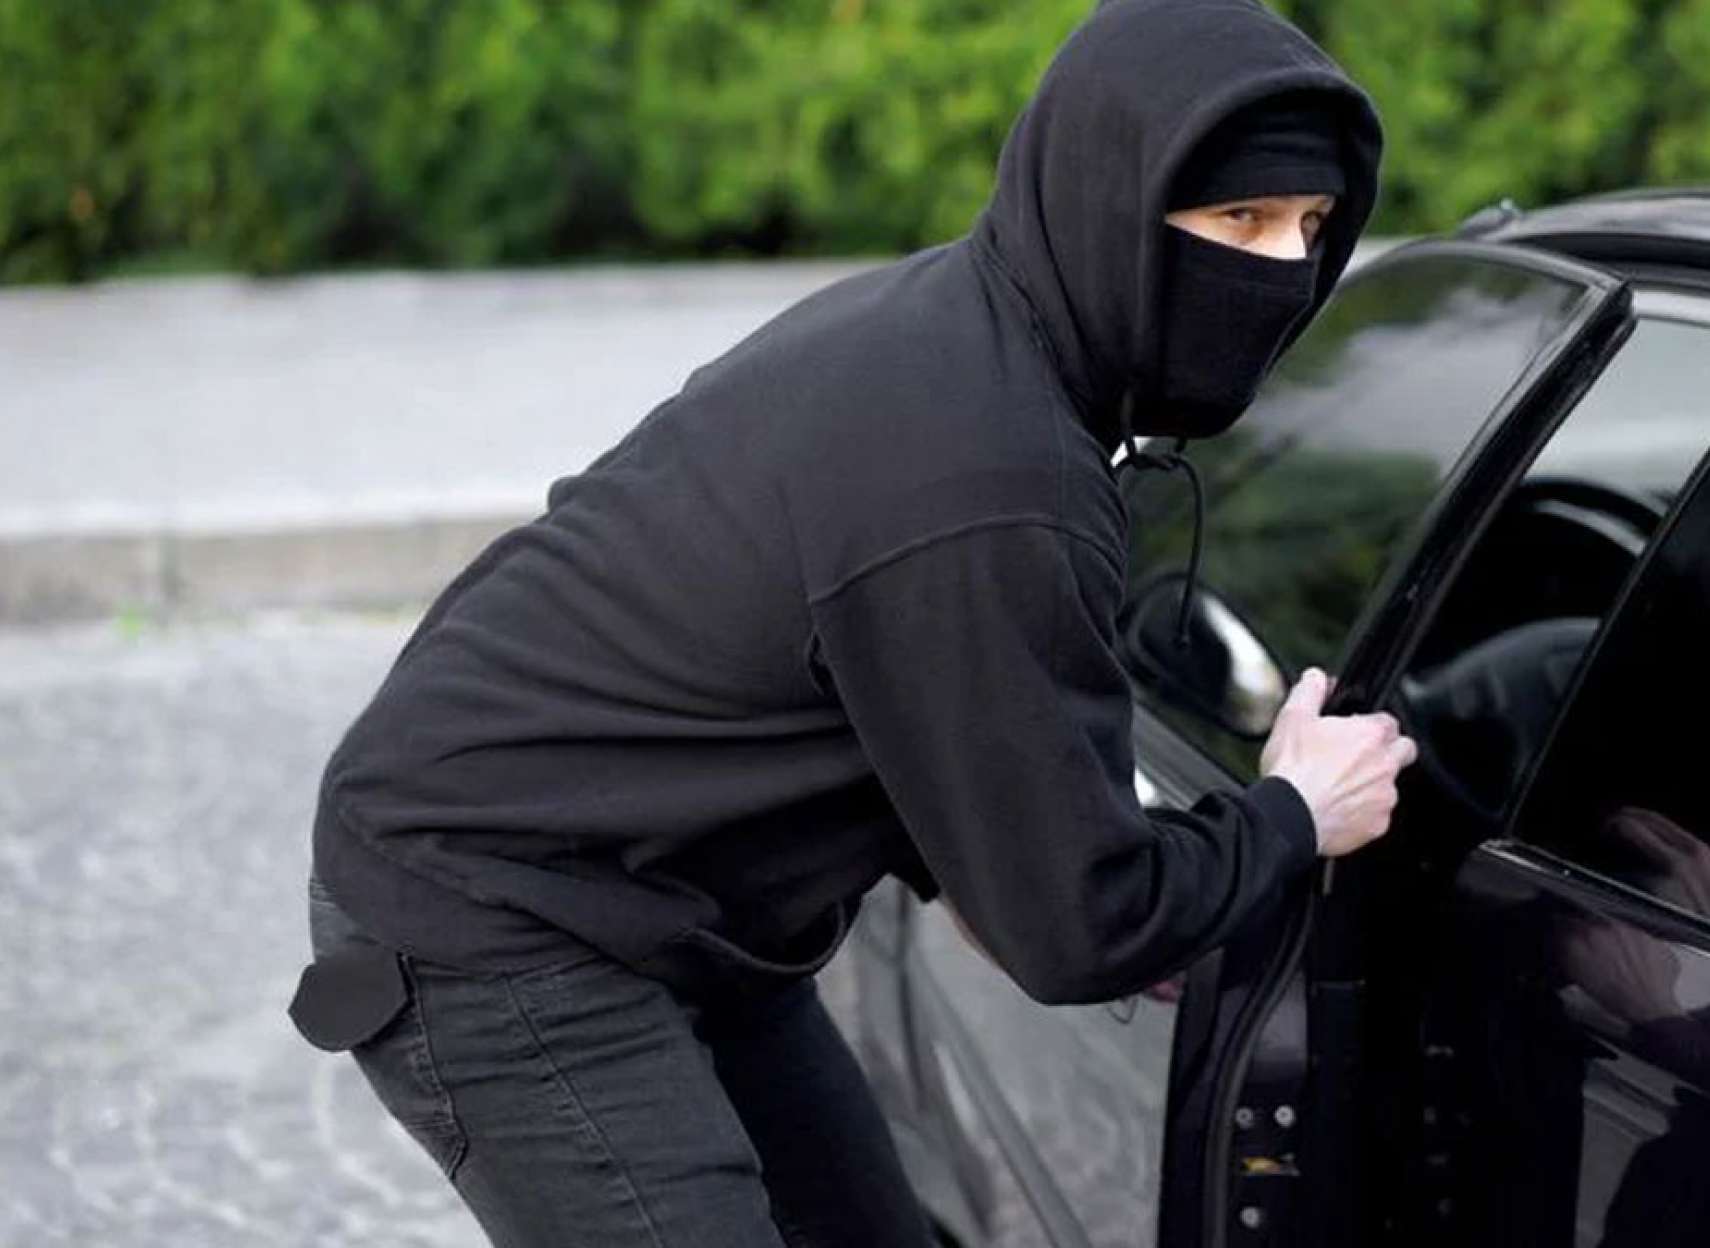 وحشت-دزدی-خودرو-در-کانادا-هر-۶-دقیقه-یک-اتومبیل-دزدیده-می-شود